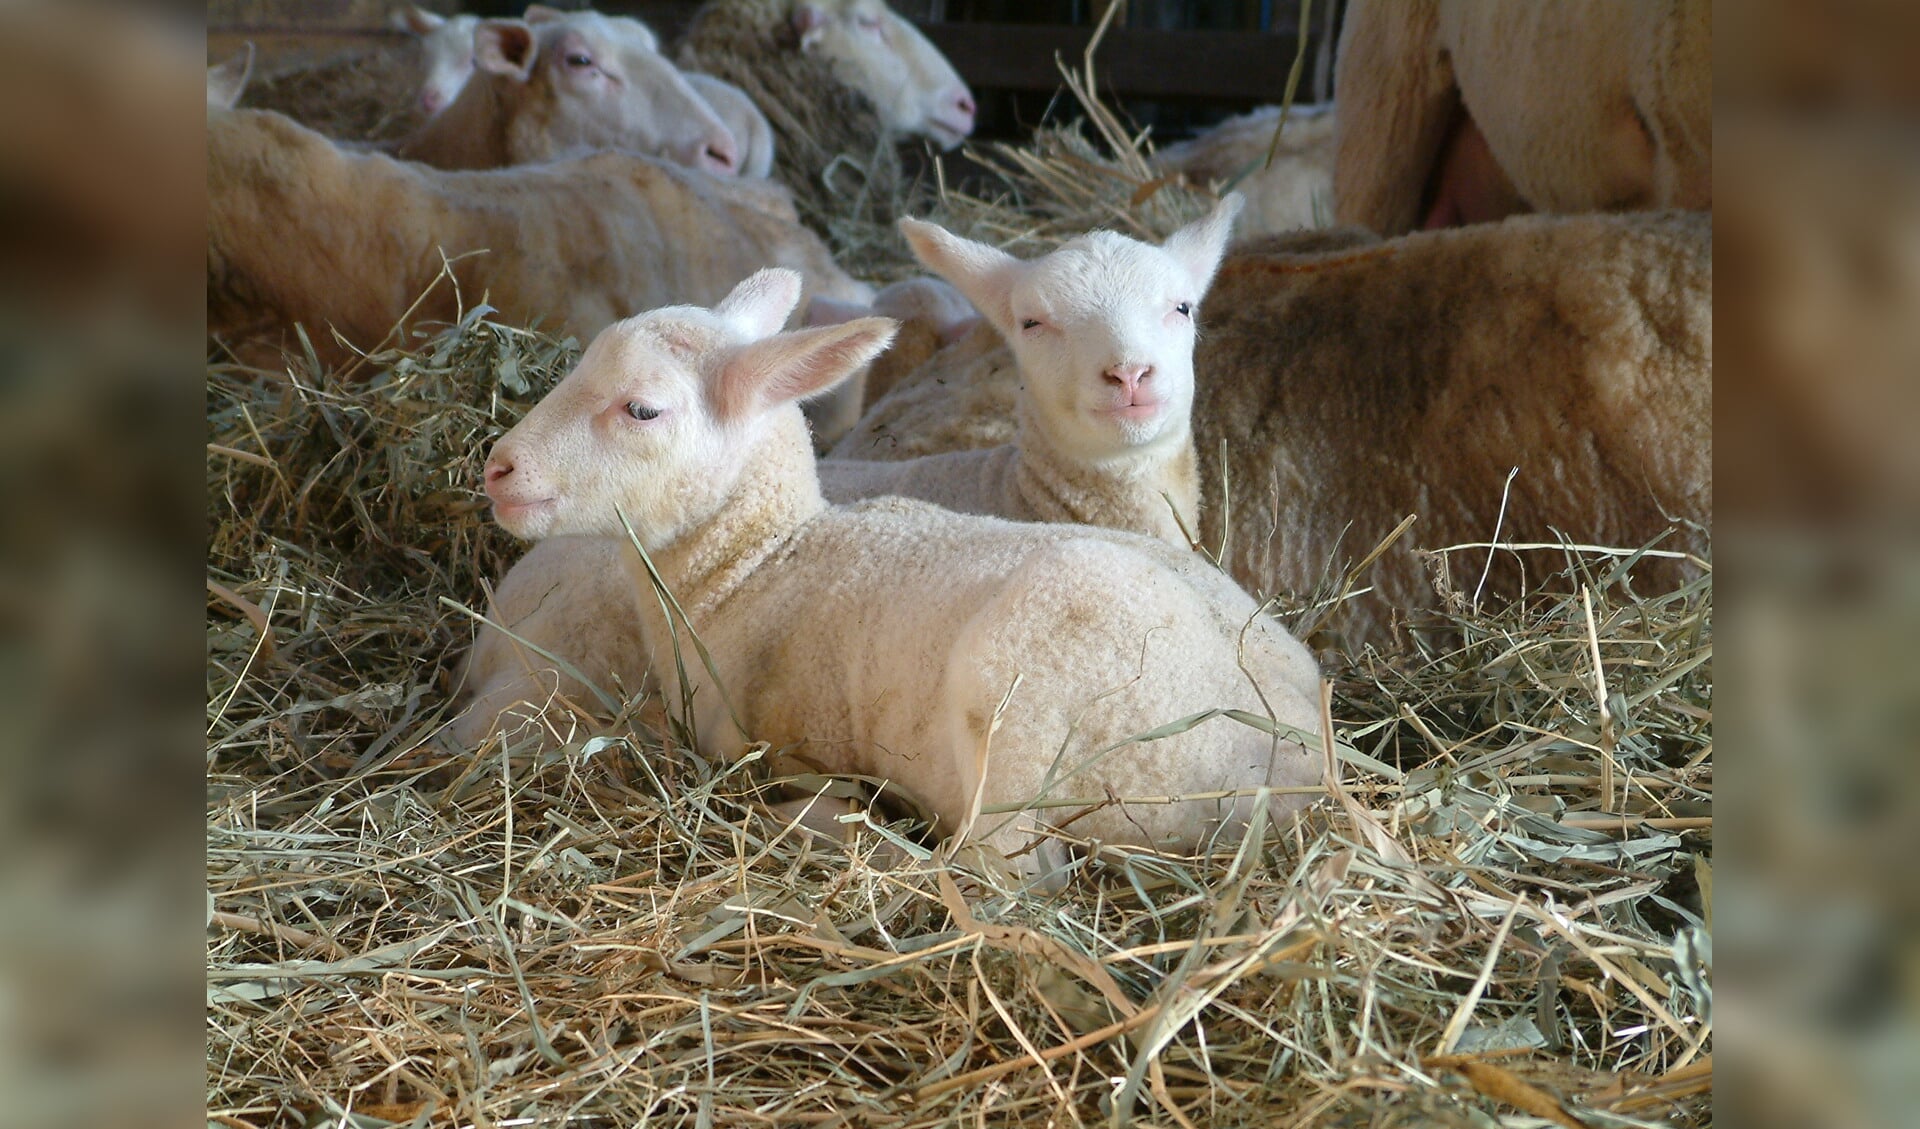 Kerstmis beginnen tussen schapen in de stal, luisterend naar kerst- en winterverhalen, is een bijzondere gebeurtenis voor grote en kleine bezoekers. (Foto: aangeleverd)